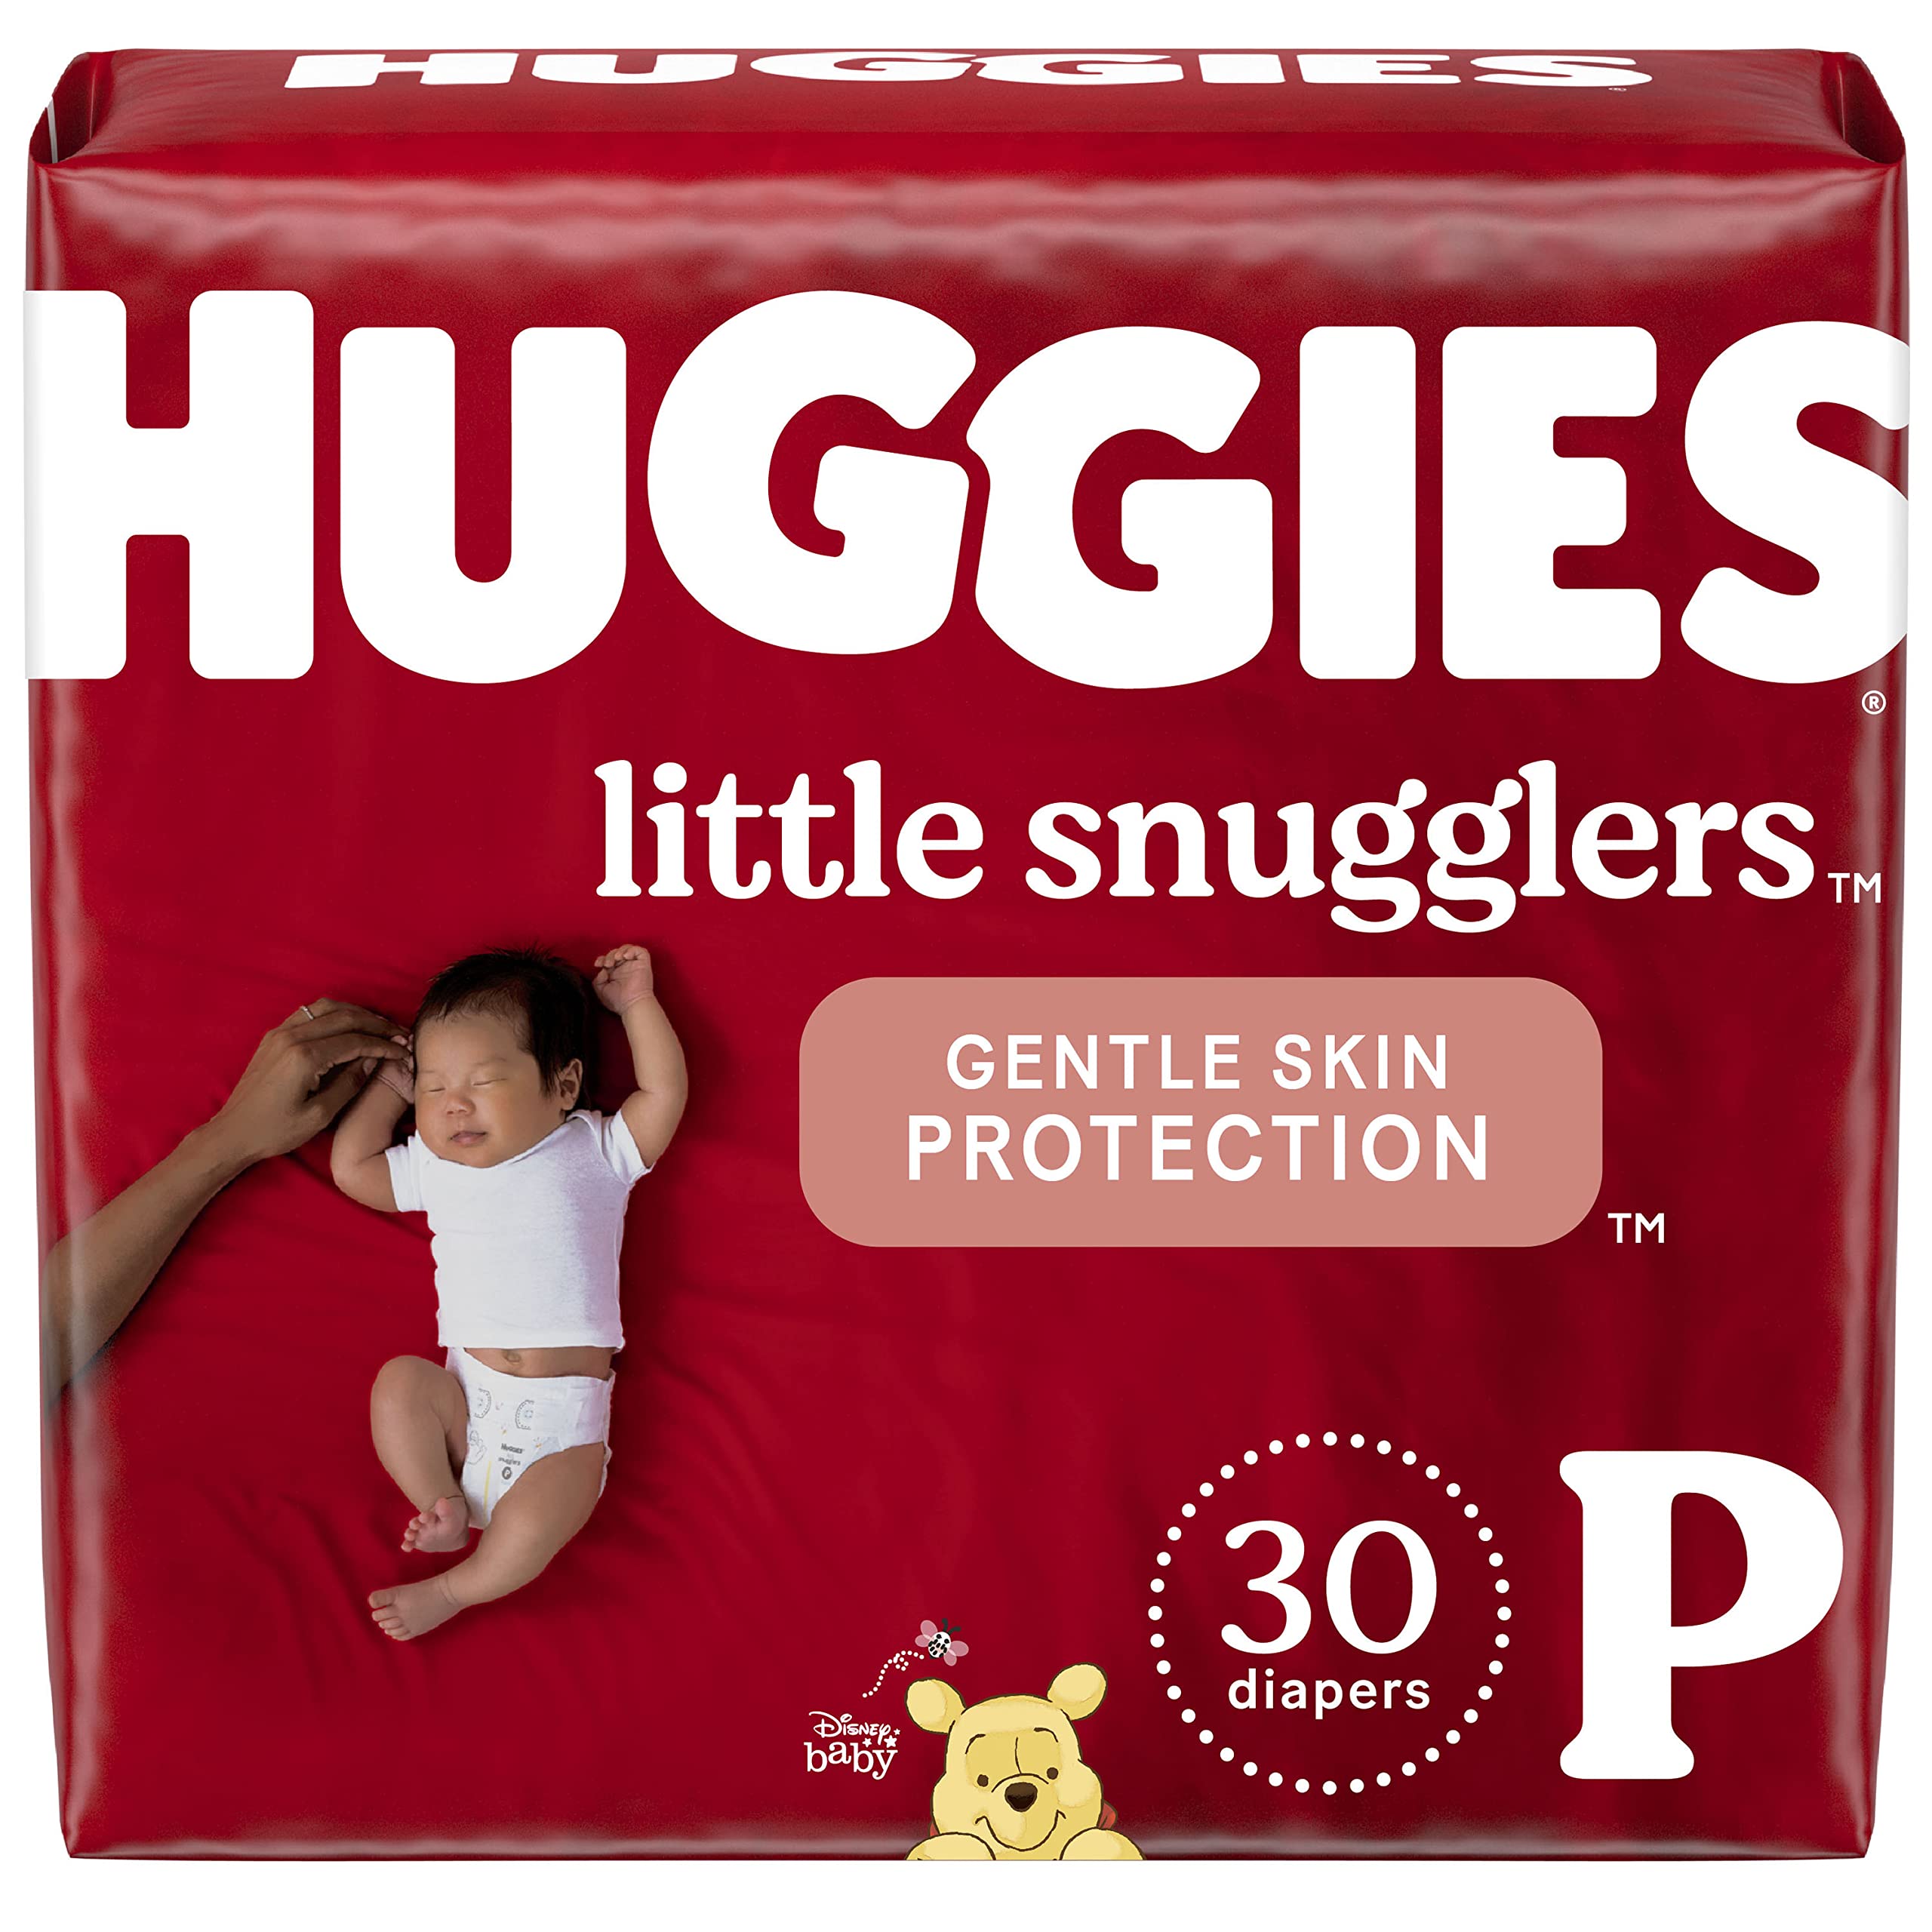 huggies 10 week old baby